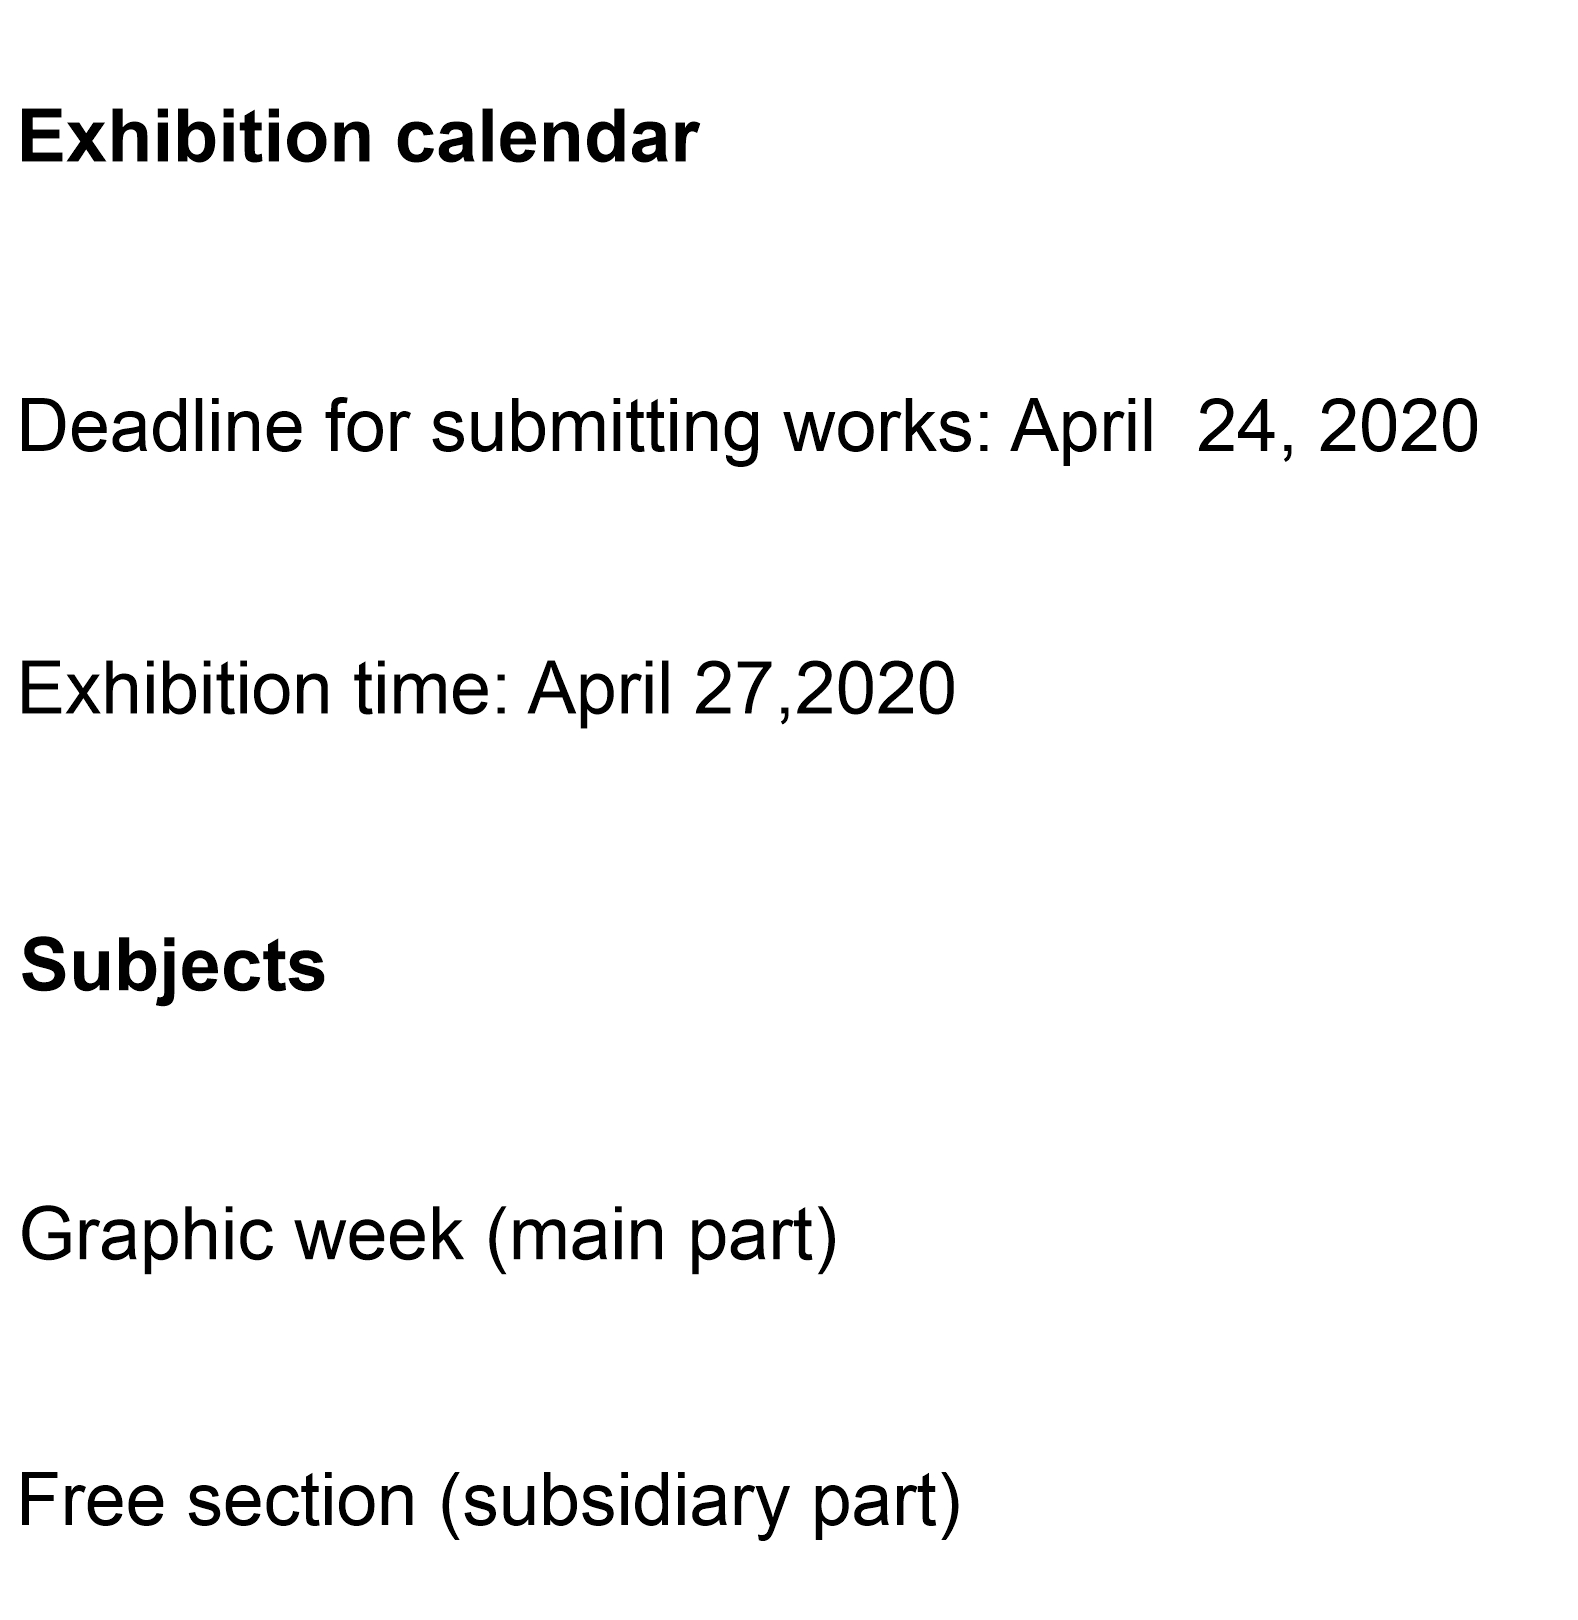 Exhibition calendar